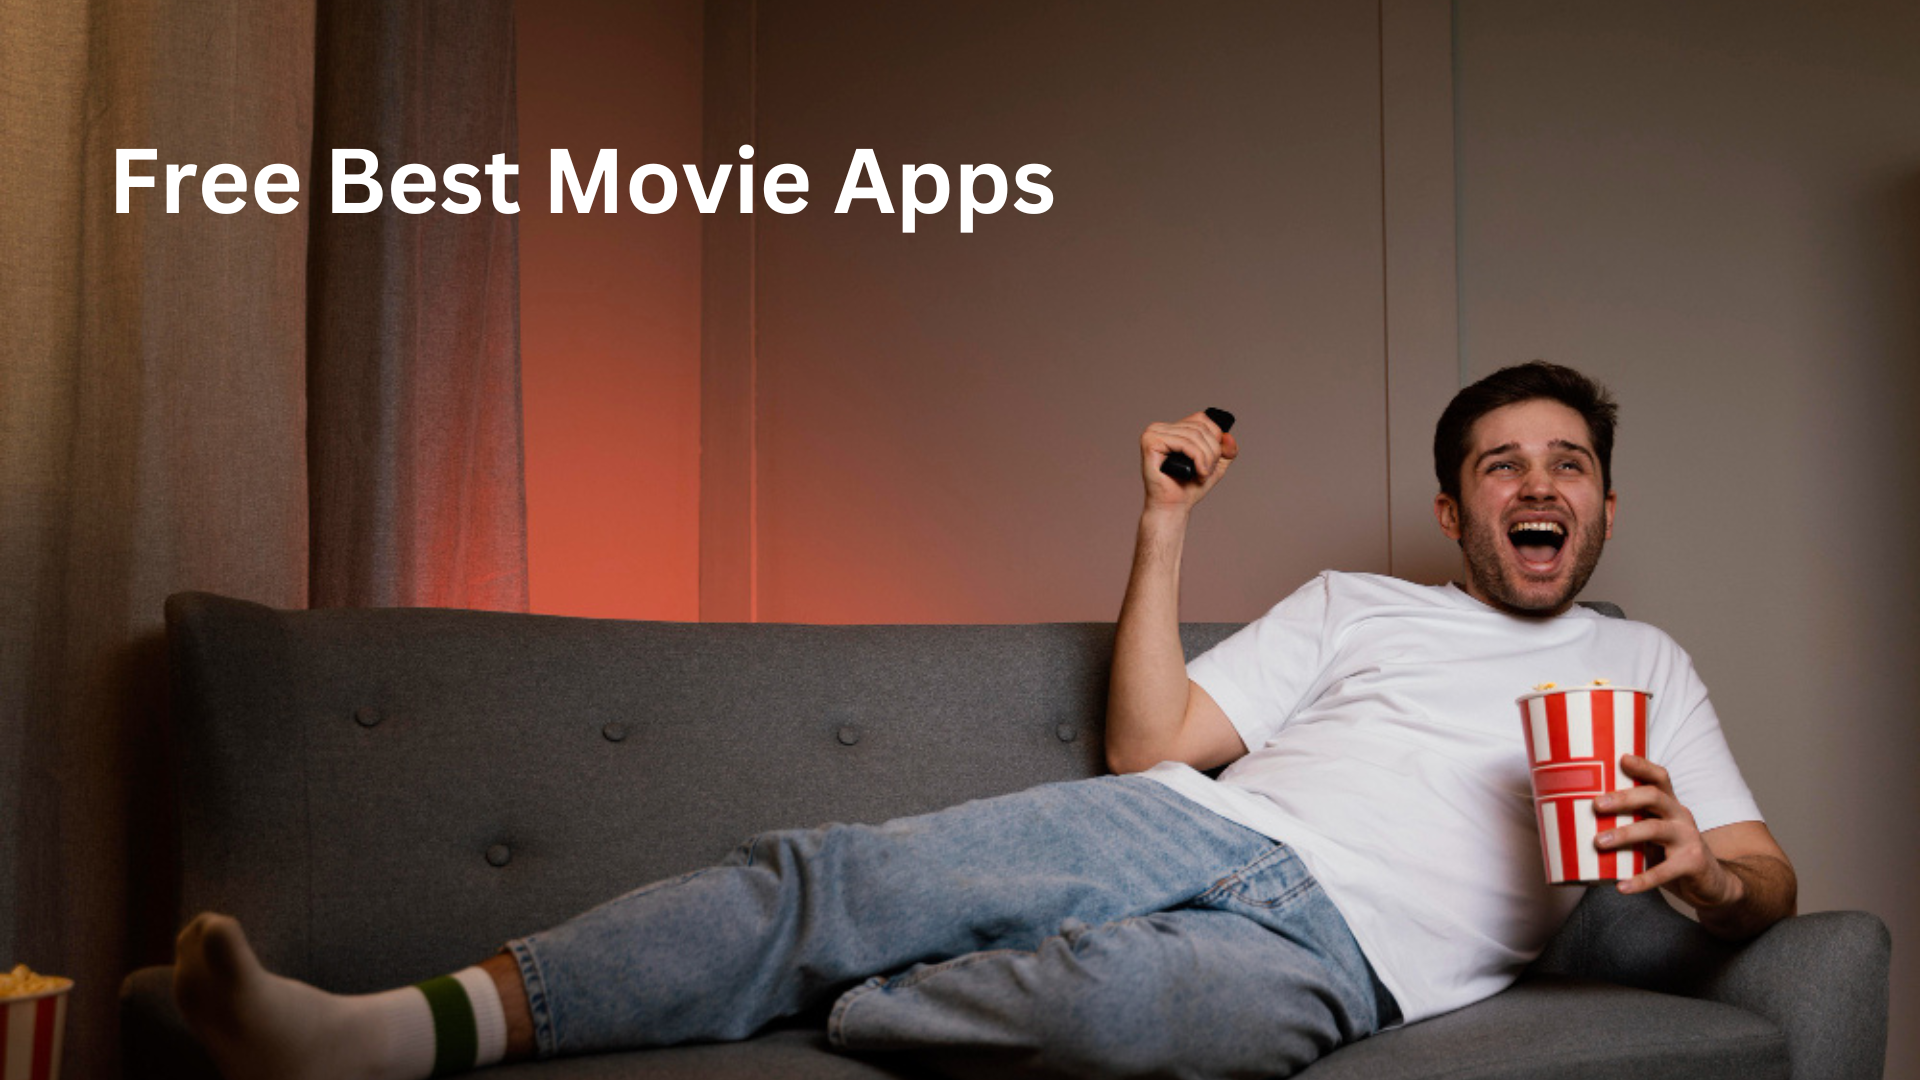 Free Best movie apps to watch online